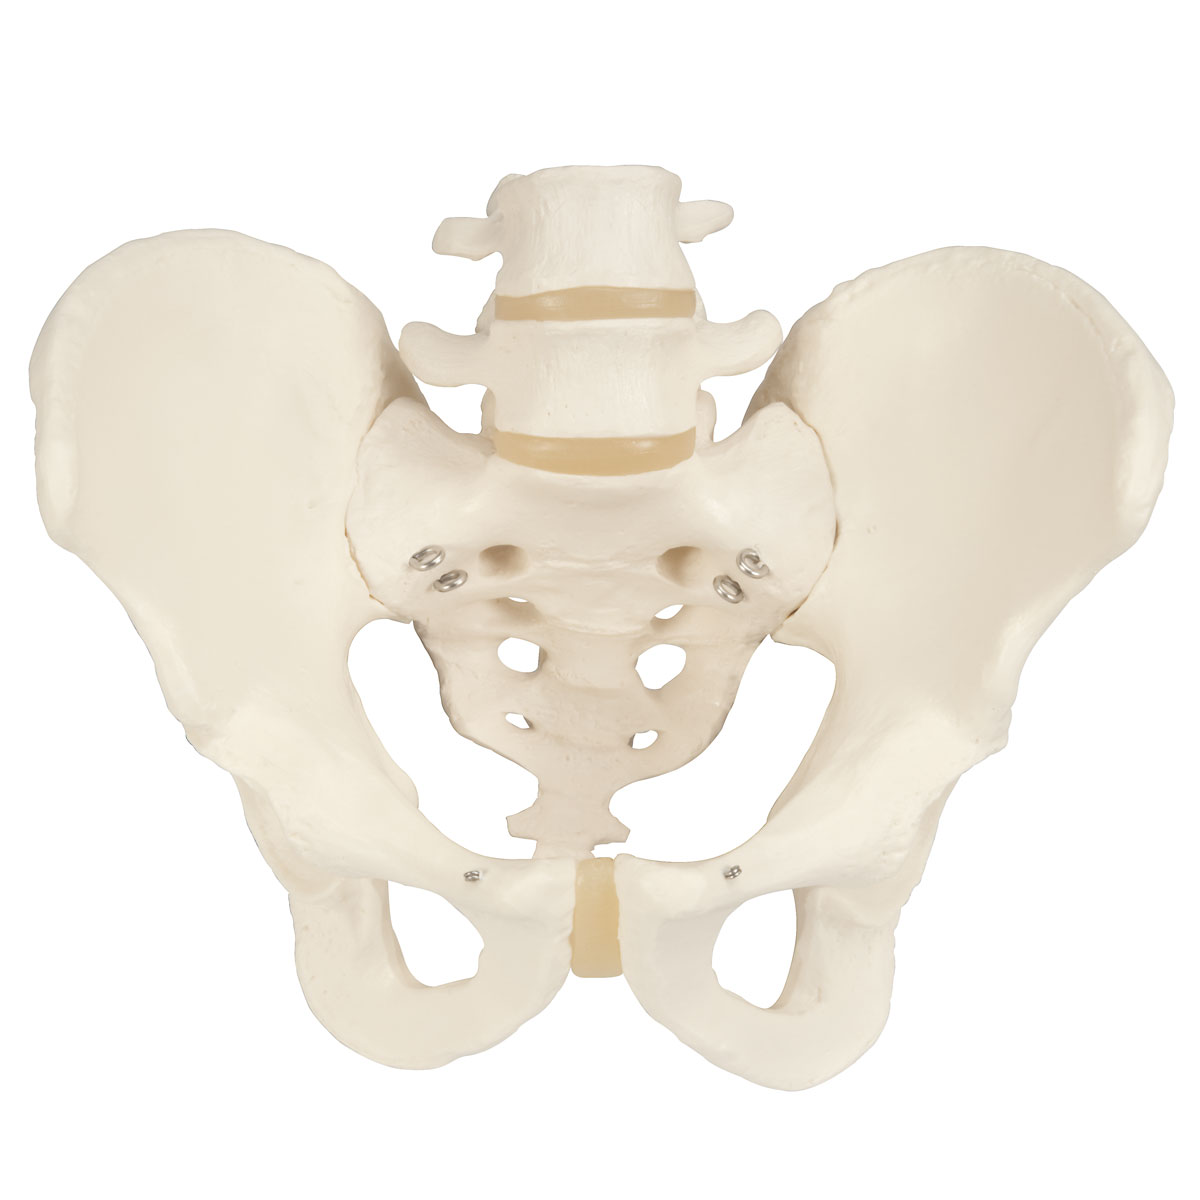 隆起(骨或某些器官的一般突起，又稱隆凸)